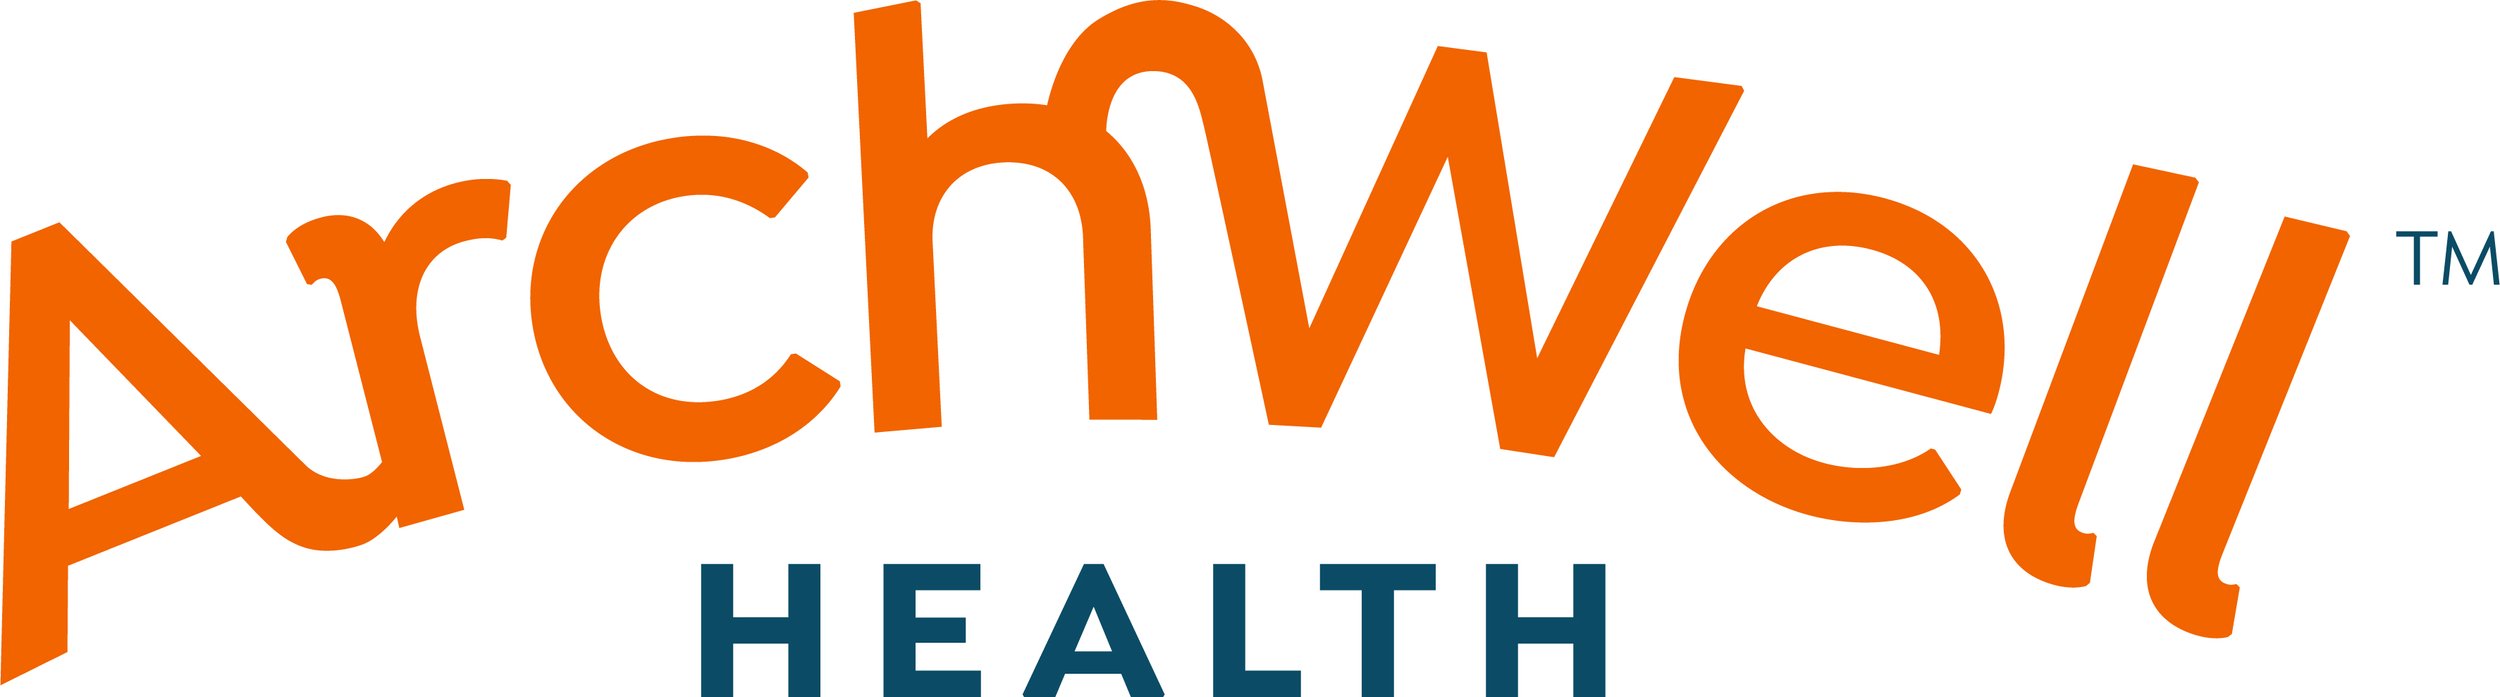 ArchWell_Health_Logo_RGB TM.jpg